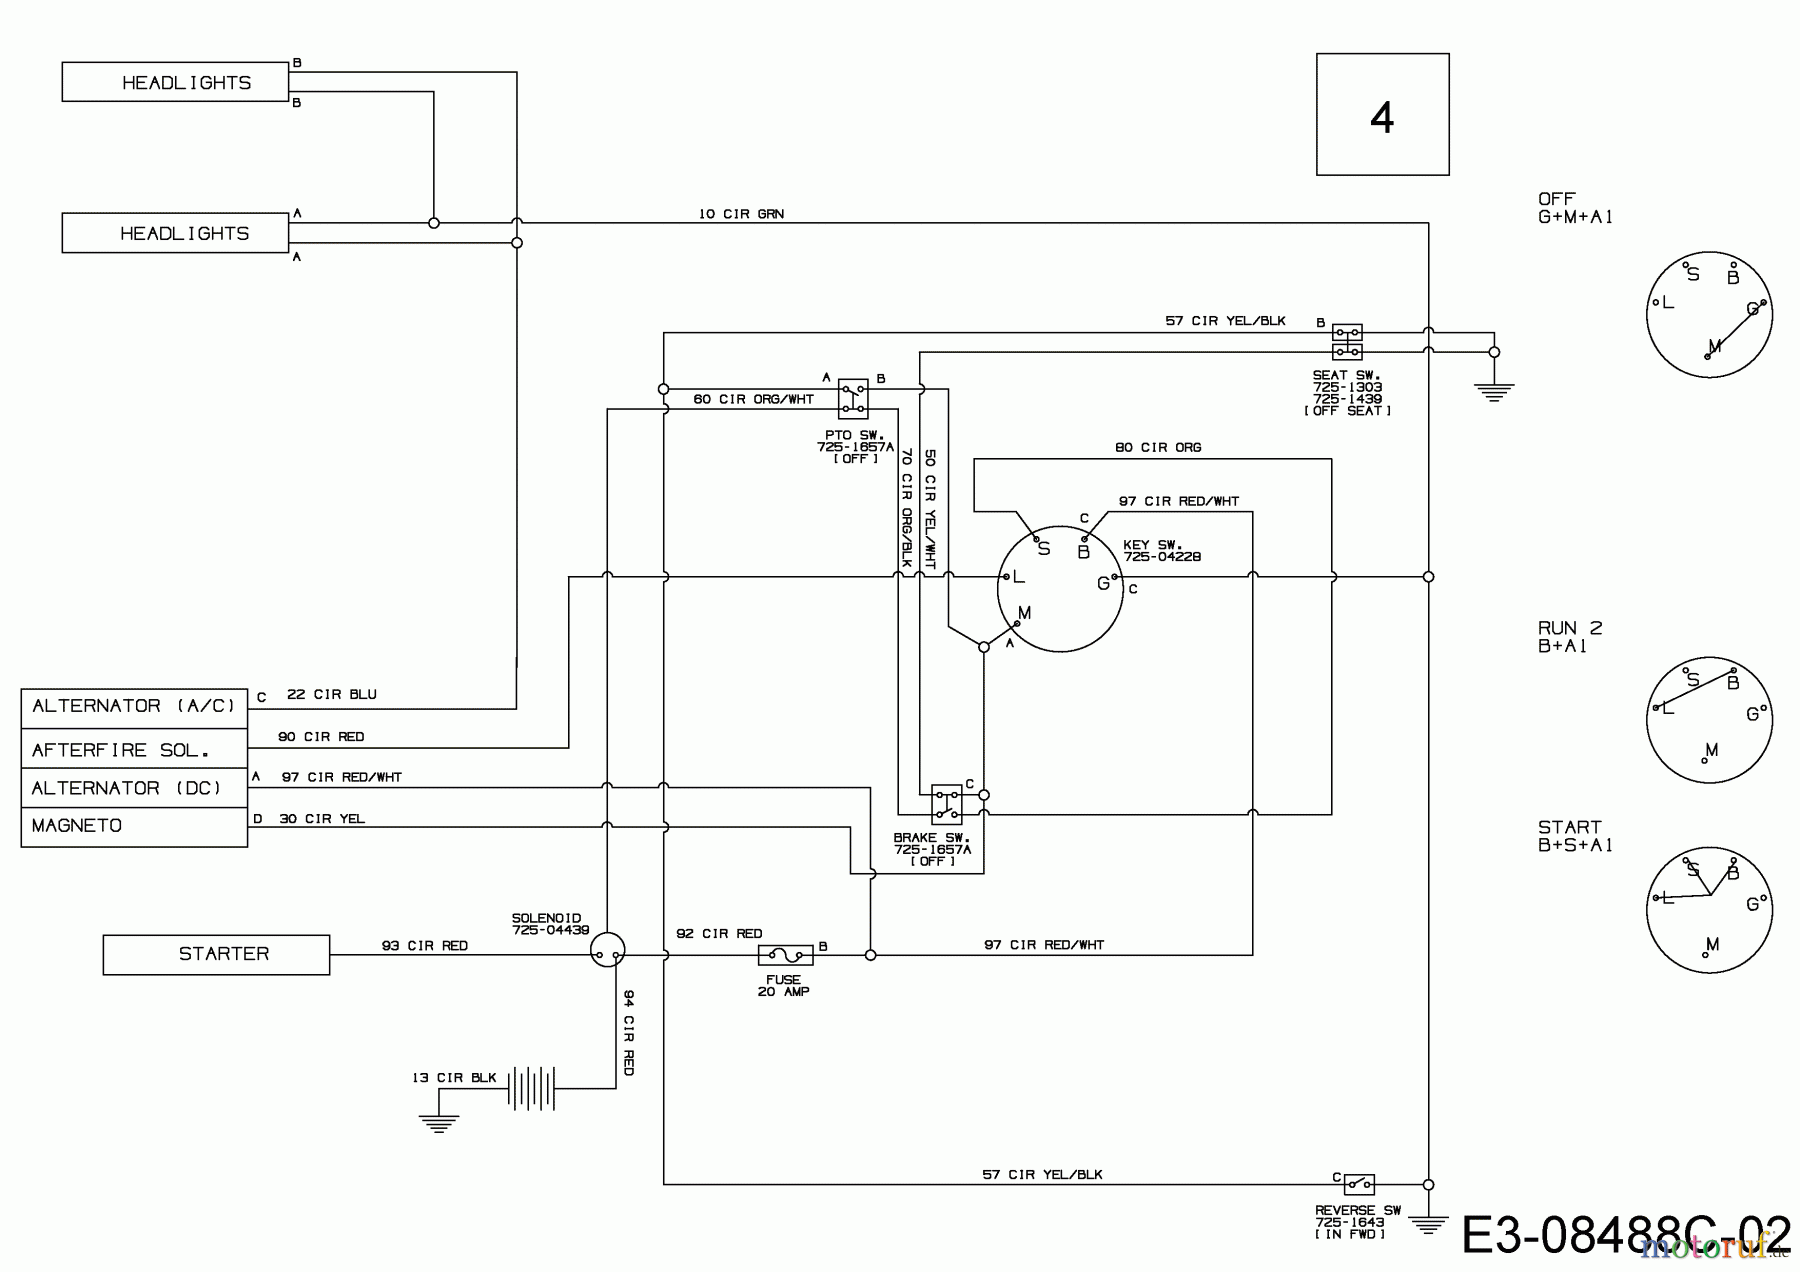  MTD Lawn tractors 547/42 13A877KS308  (2017) Wiring diagram